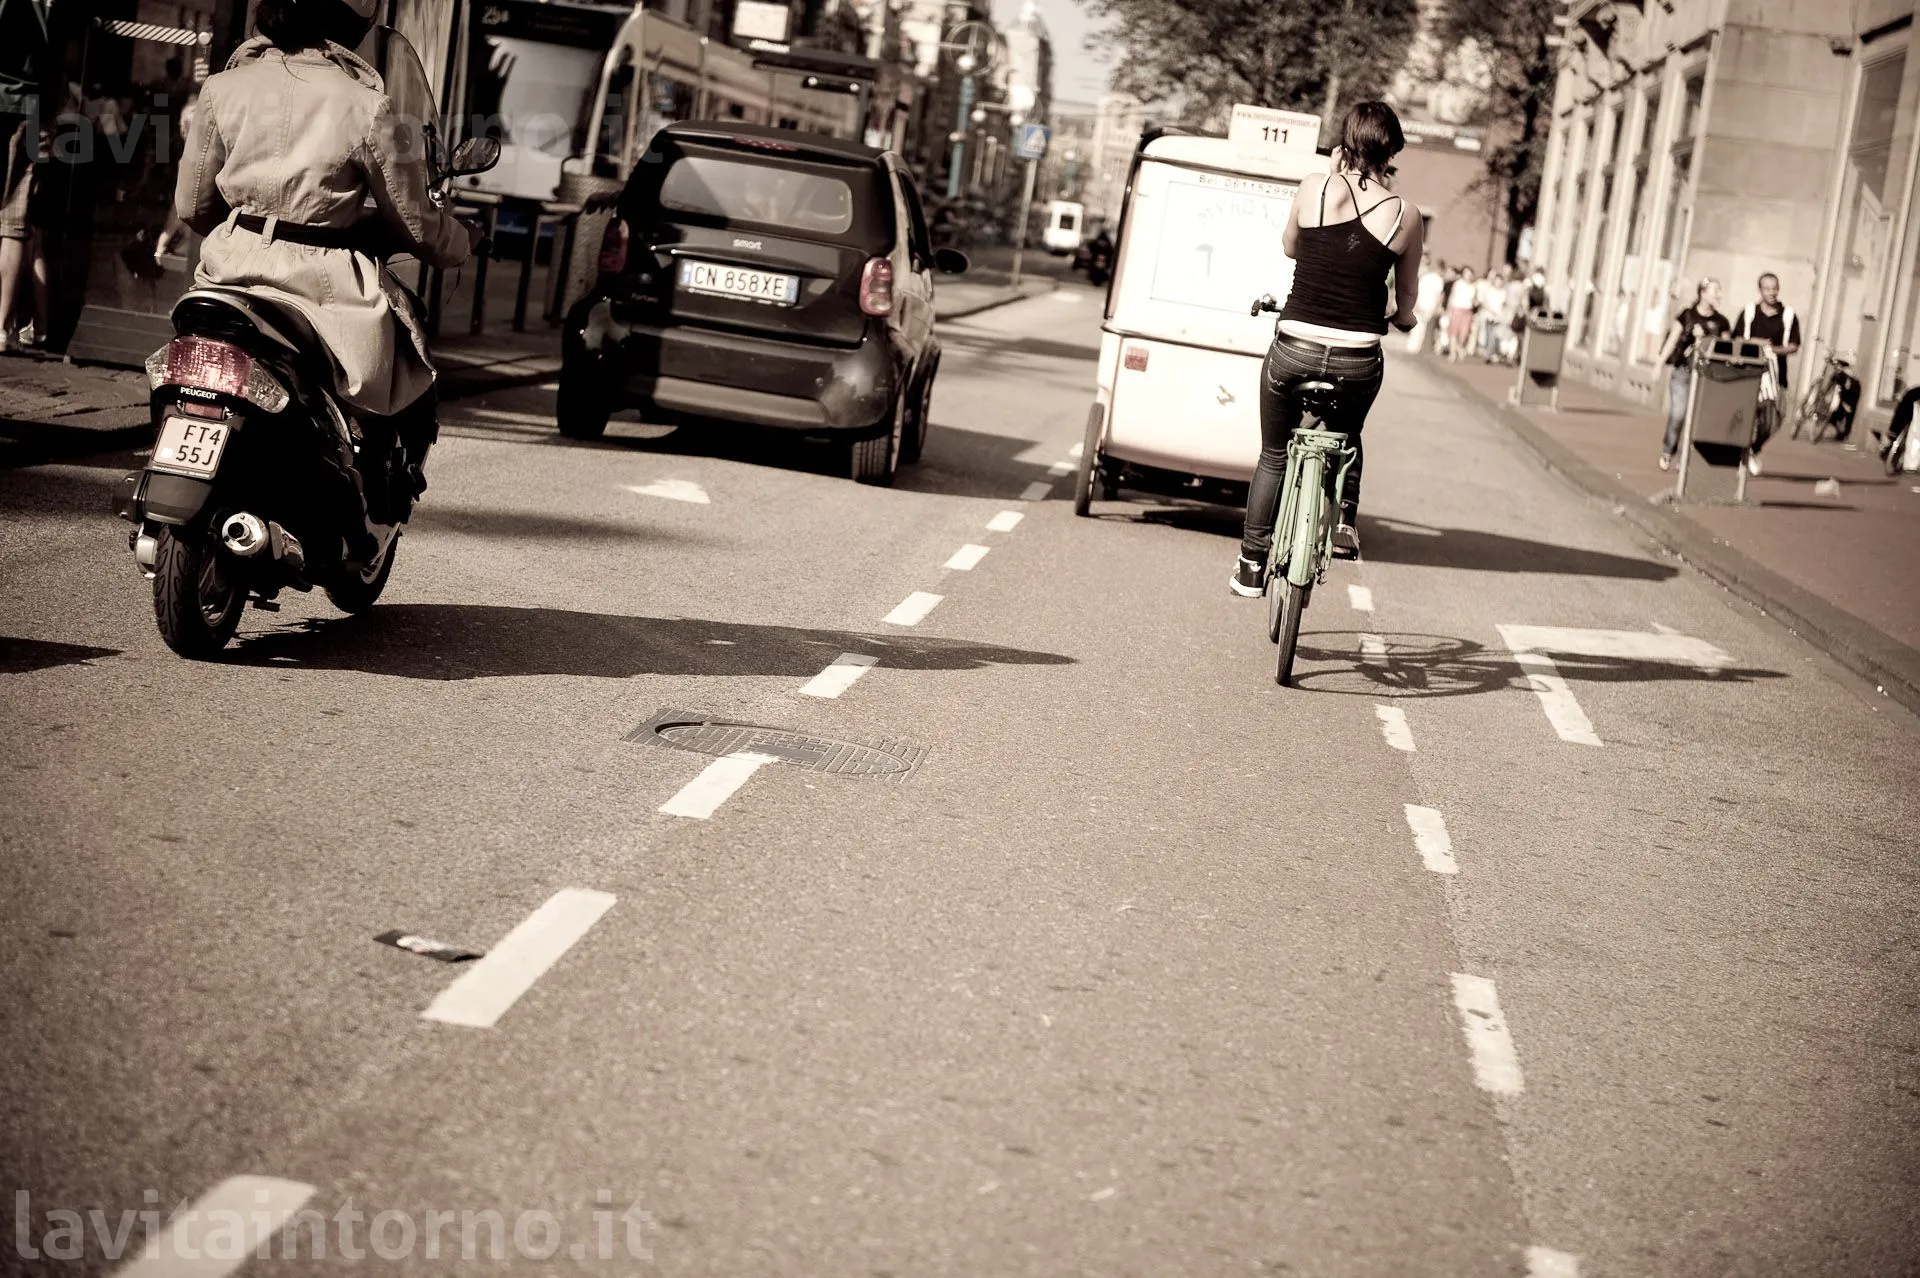 life's moments @ Amsterdam: bike's time
D700
Nikkor 24-70 F/2.8G AF-S